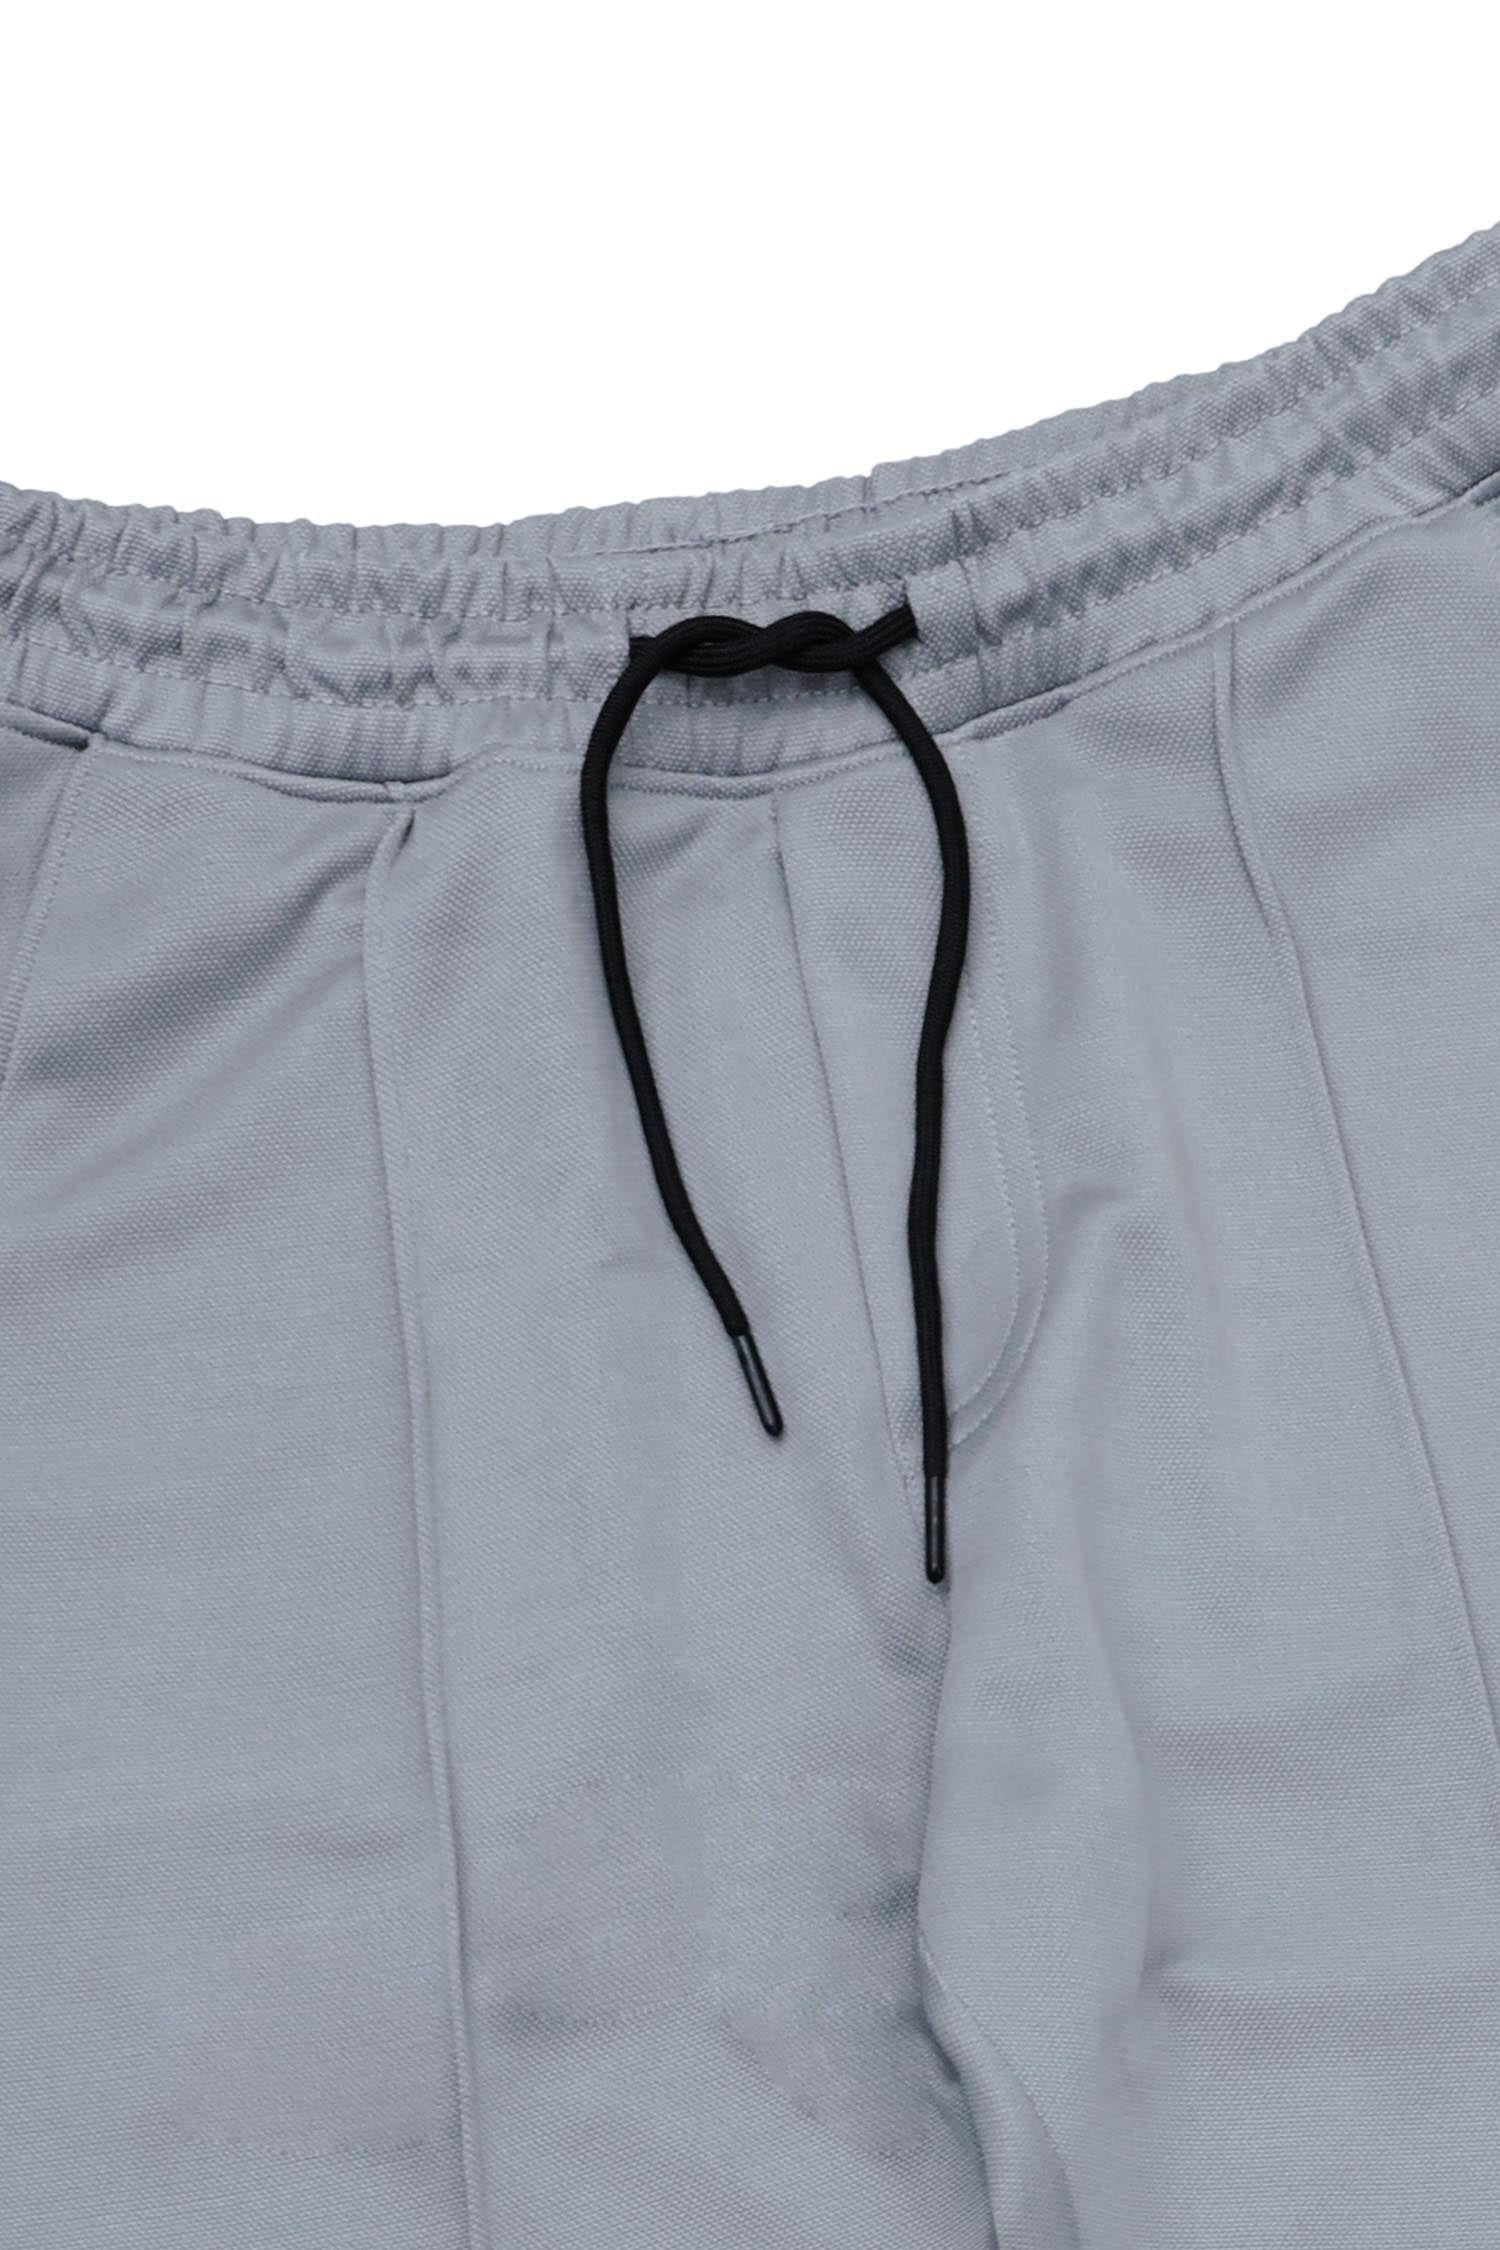 Plain Stripe Line Loose Bottom Trouser